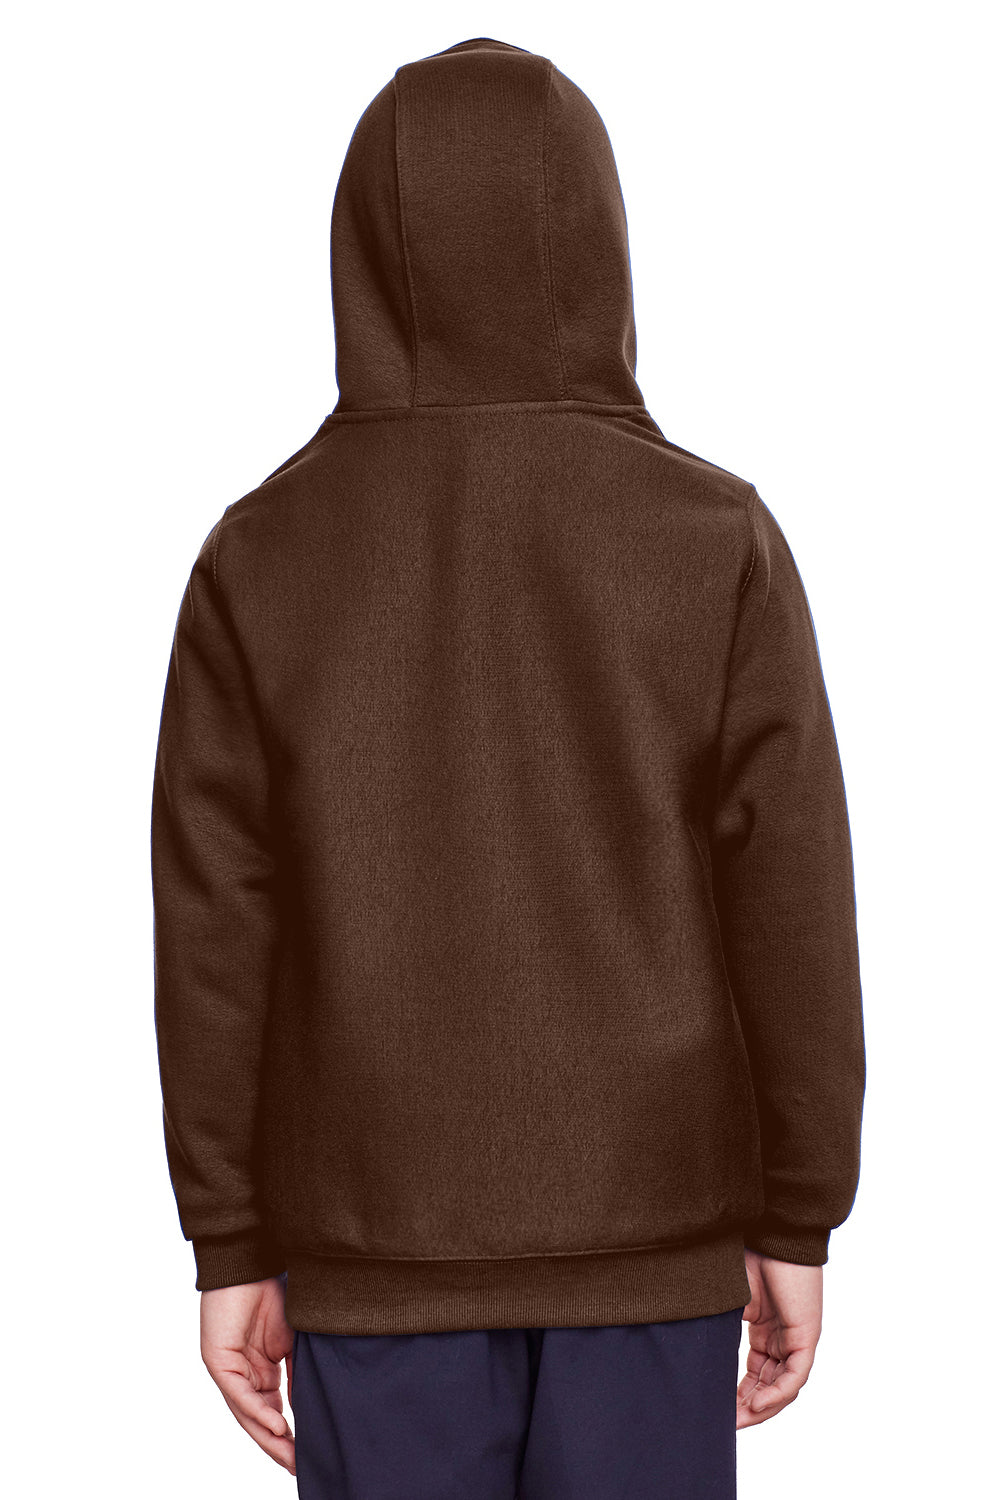 Team 365 TT96Y Youth Zone HydroSport Fleece Water Resistant Hooded Sweatshirt Hoodie Brown Back